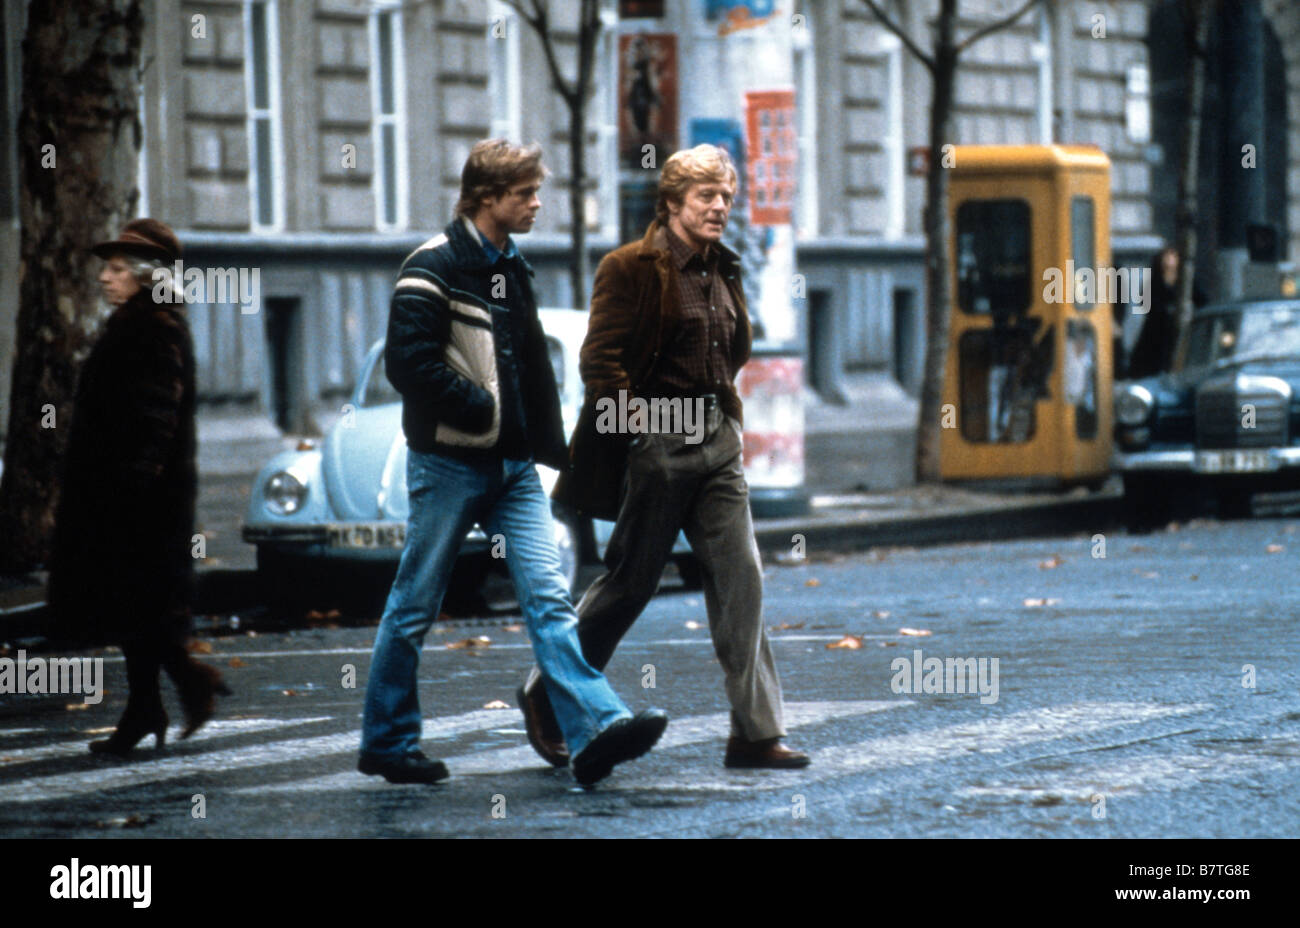 Spy Game  Year: 2001 - uk usa Robert Redford, Brad Pitt  Director: Tony Scott Stock Photo